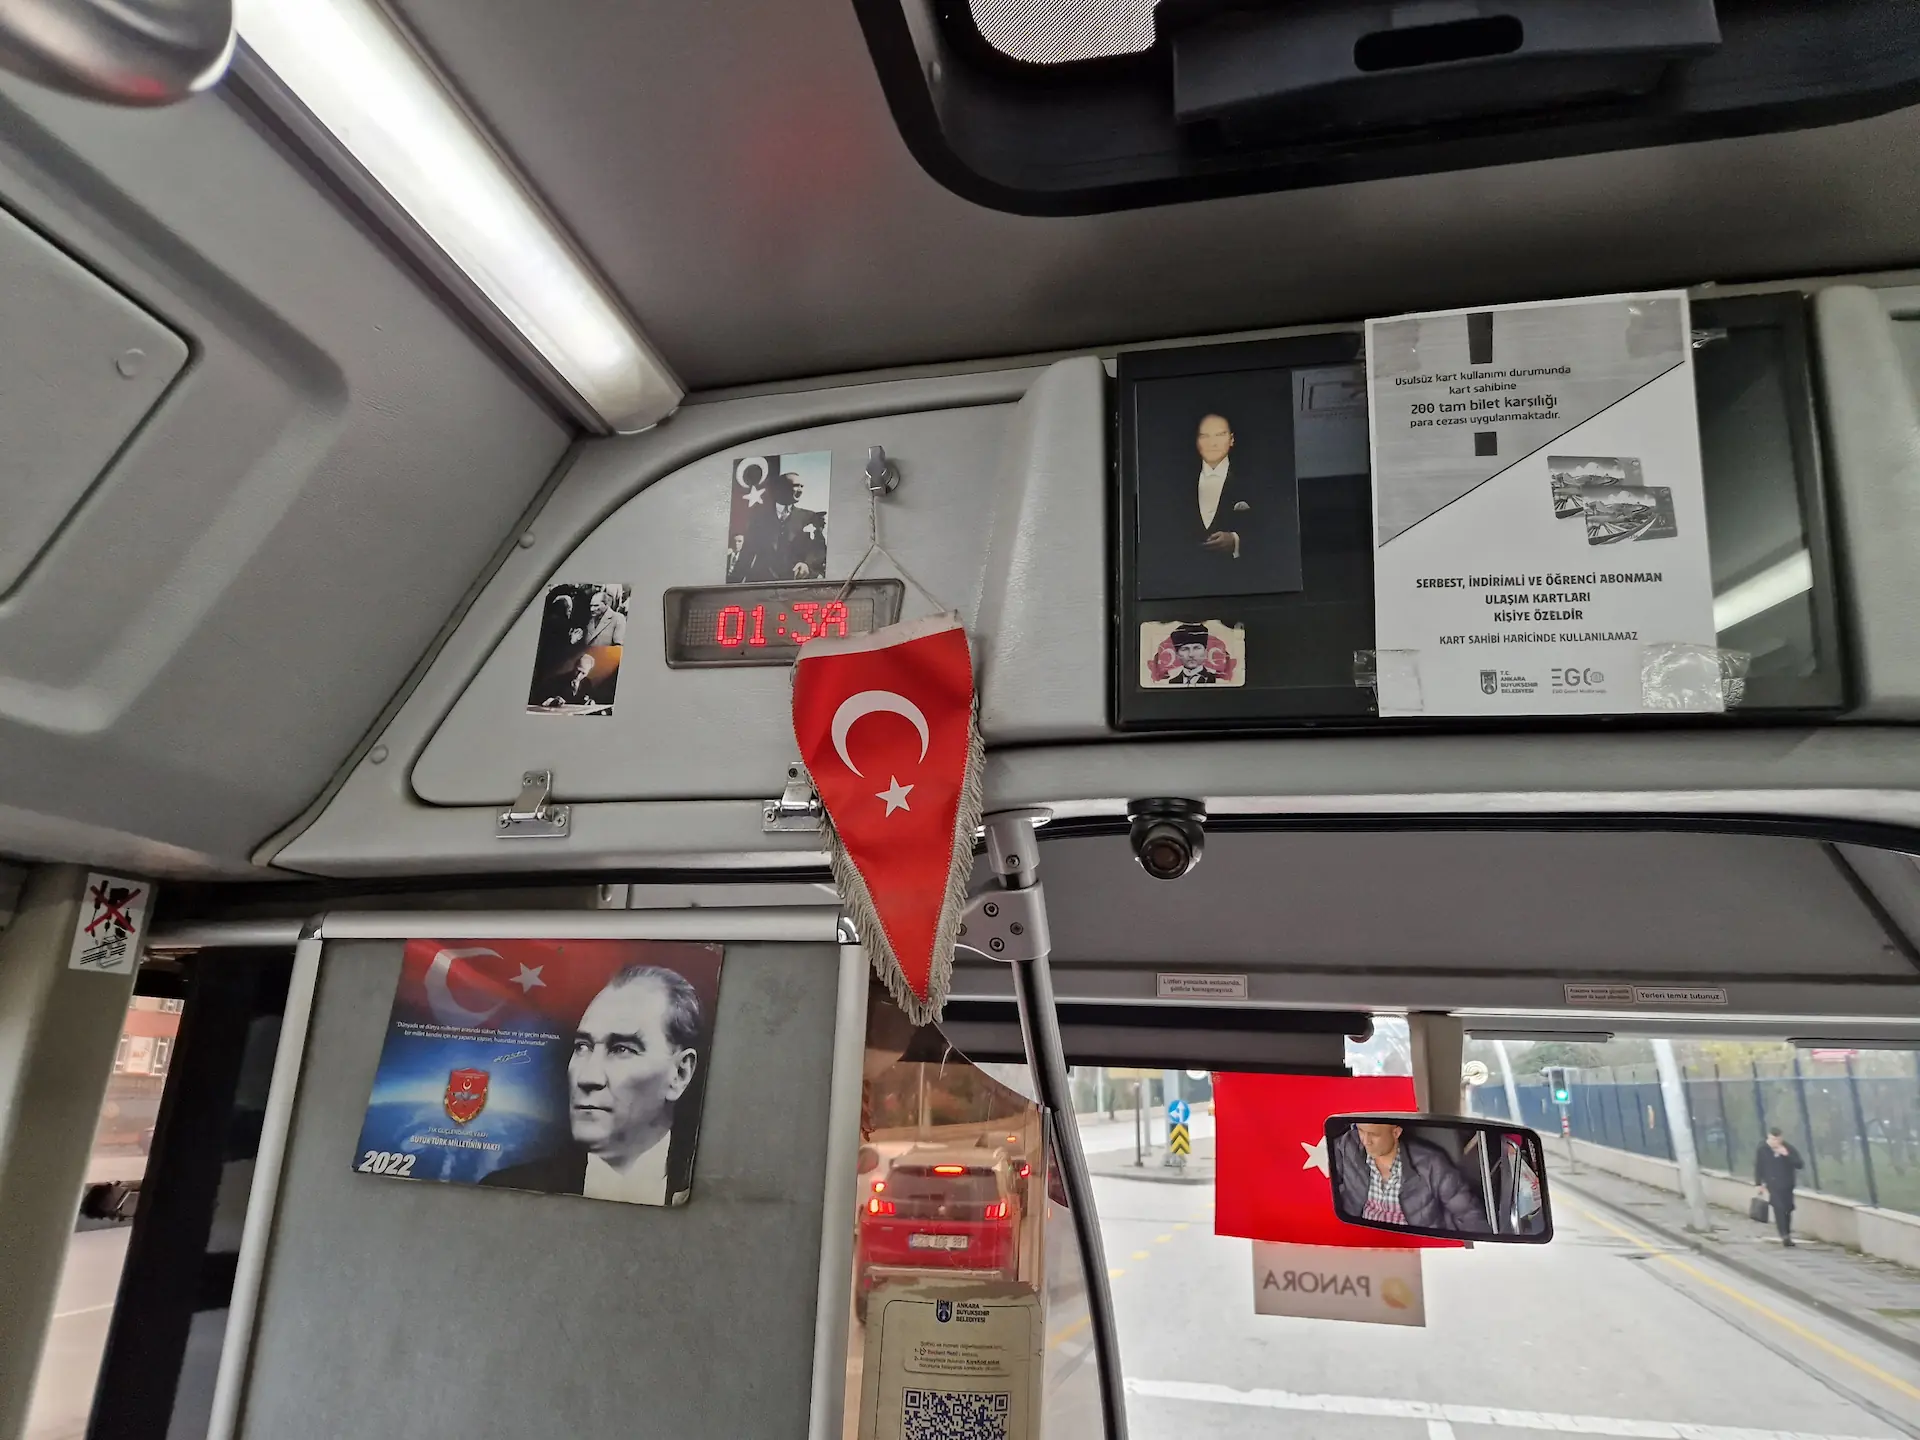 Différents posters et bannières sont accrochés à l'avant d'un bus : portrait d'Atatürk en couleur, portrait en noir et blanc sur fond de drapeau turc rouge, un drapeau turc simple, etc.